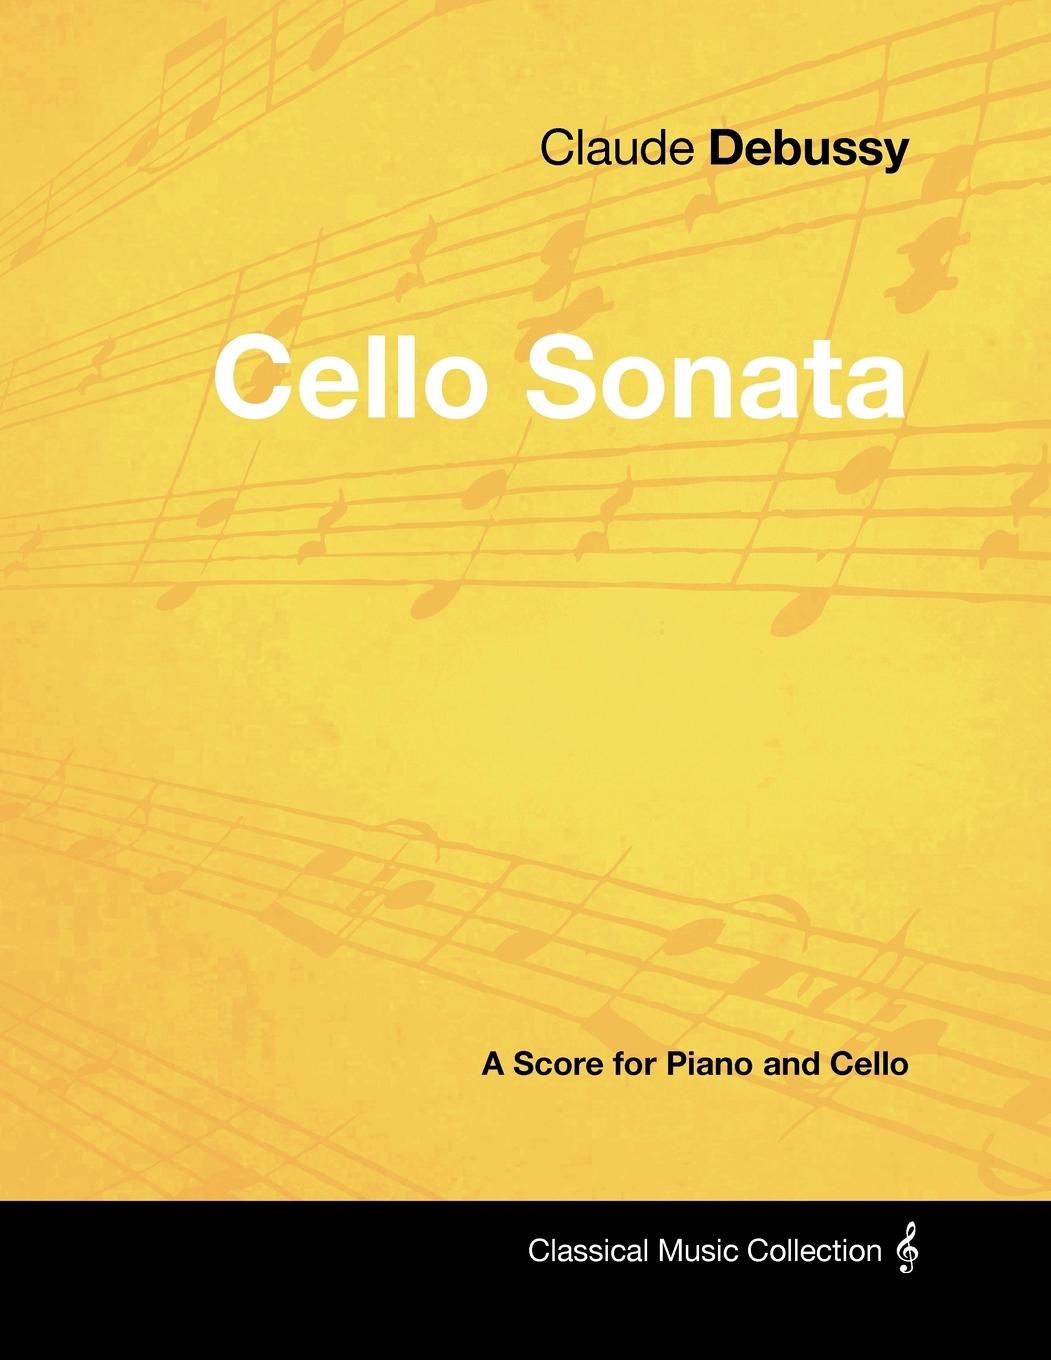 Claude Debussy's - Cello Sonata - A Score for Piano and Cello  Claude Debussy  Taschenbuch  Englisch  2012 - Debussy, Claude